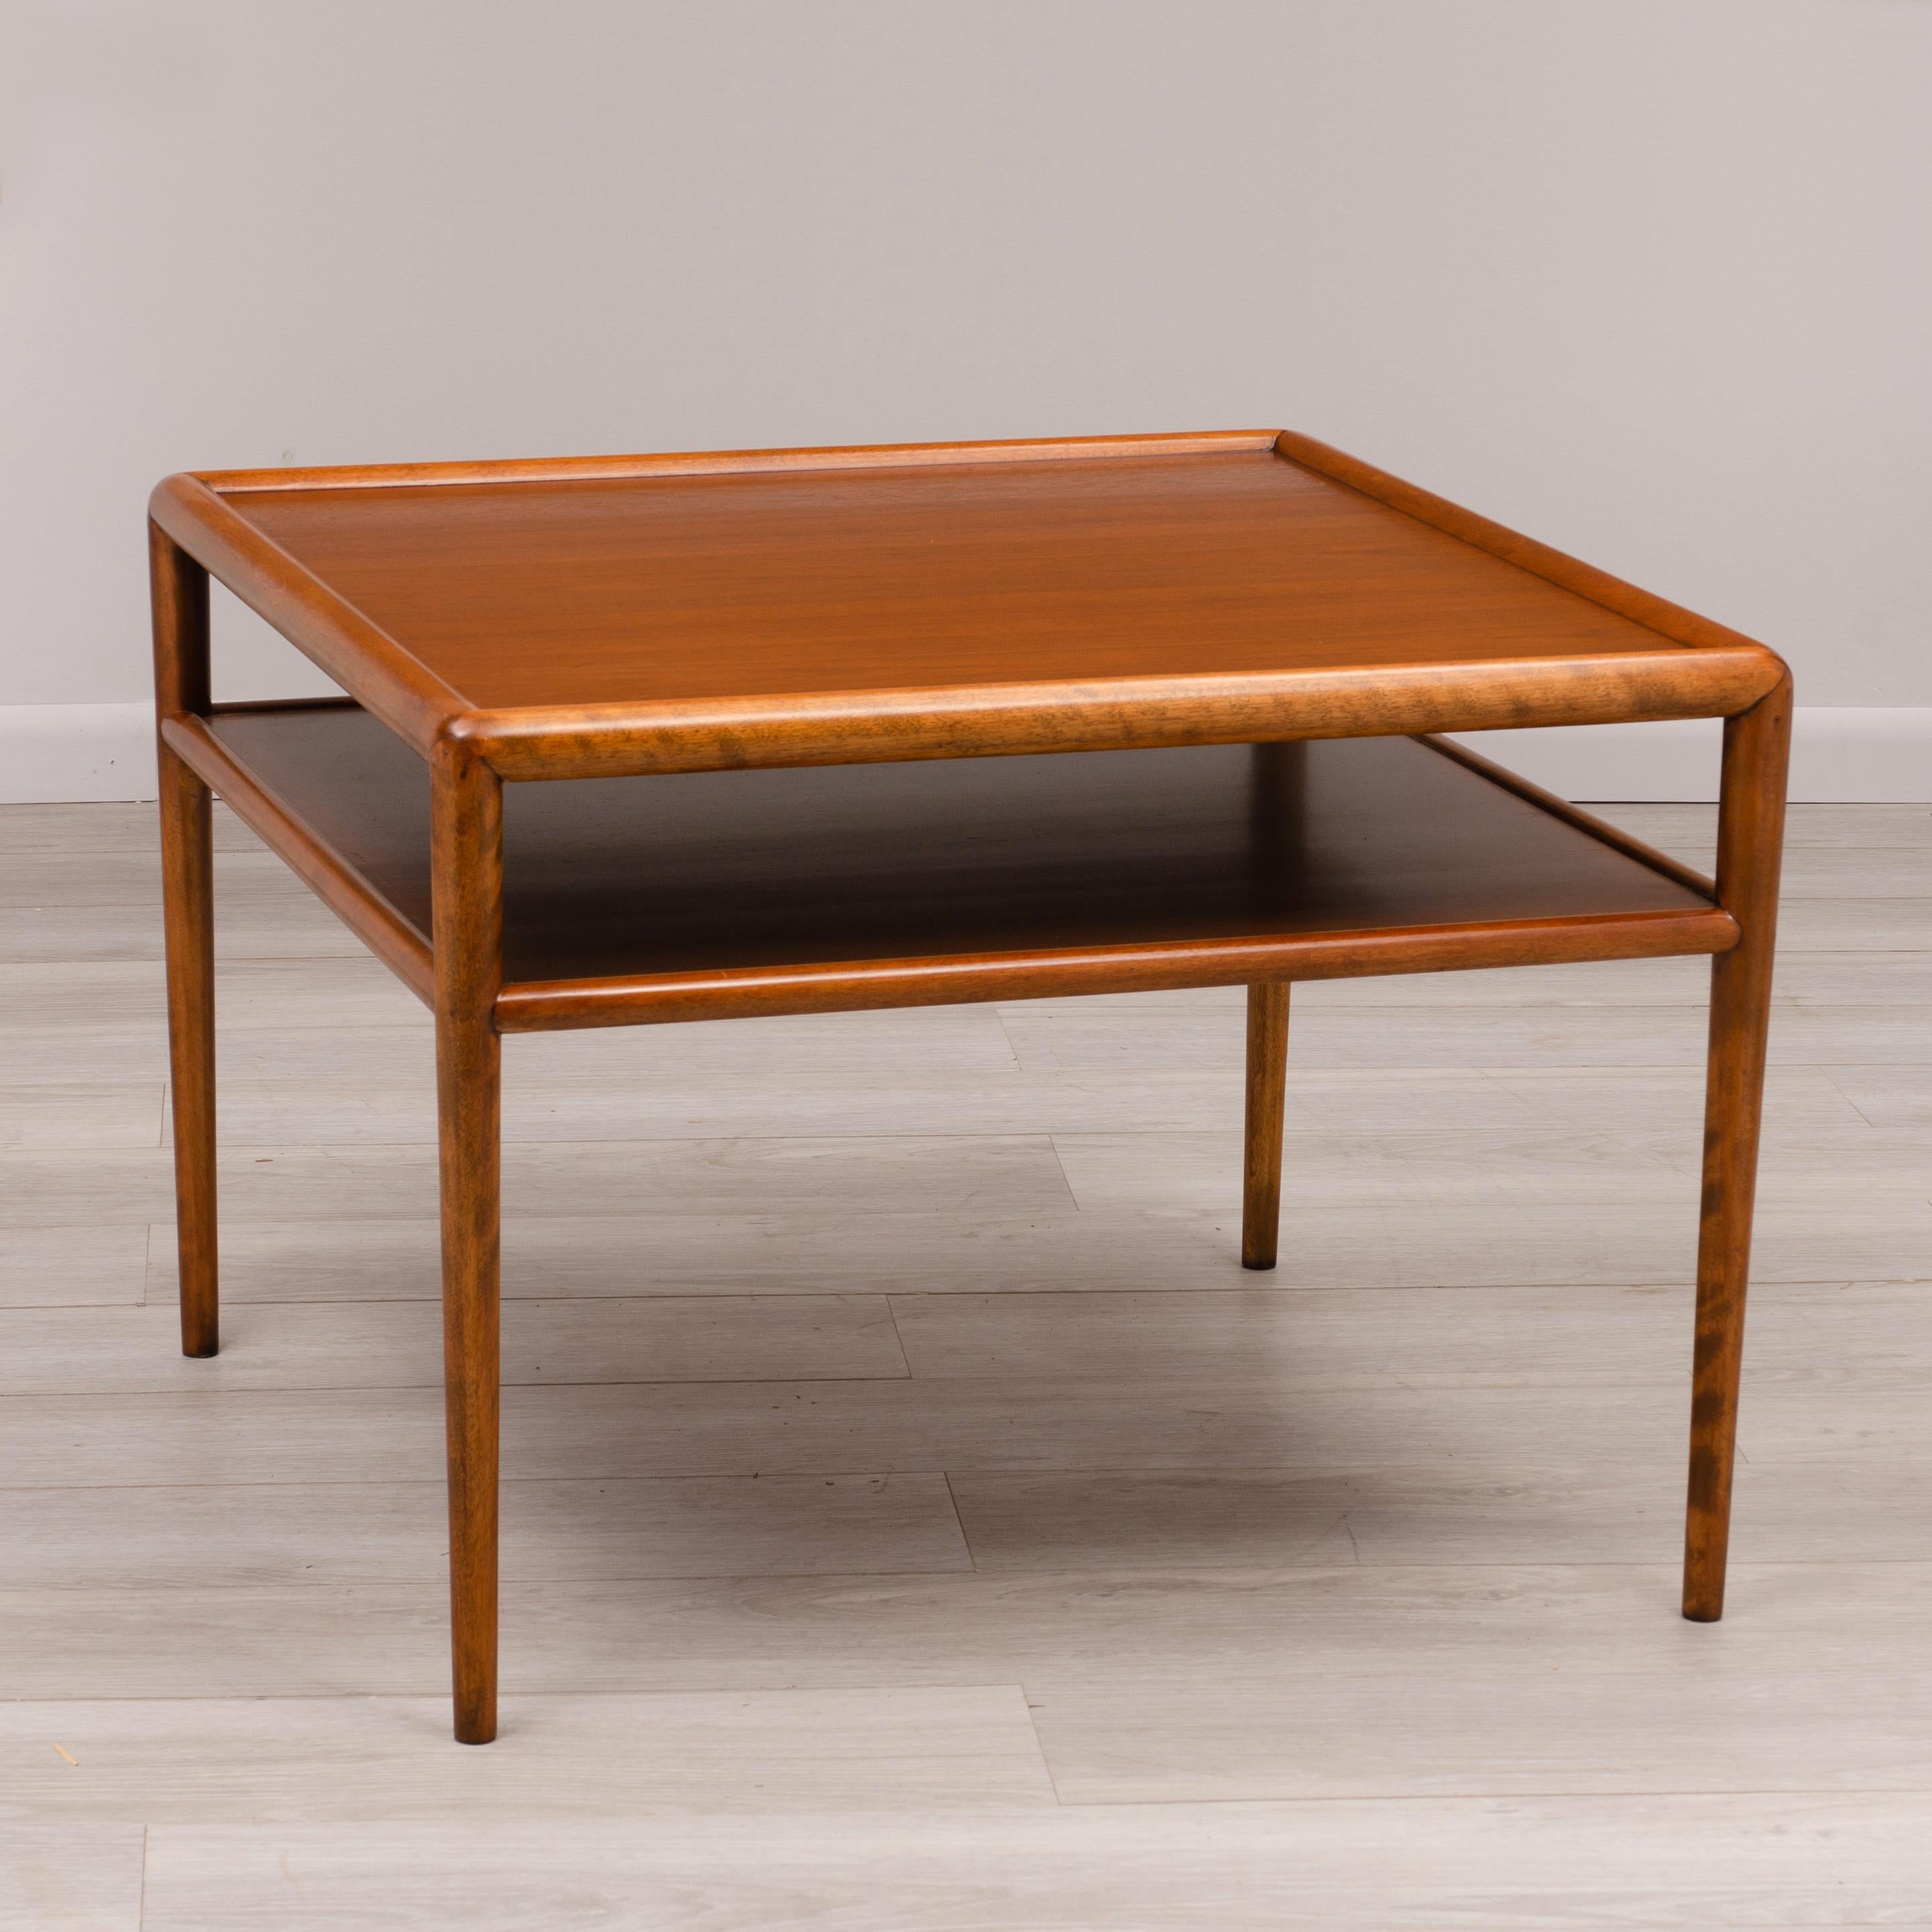 Table à deux plateaux en acajou de style moderne du milieu du siècle, conçue par AT&T. Robsjohn-Gibbings pour Widdicomb. Fabriqué en juillet 1953.